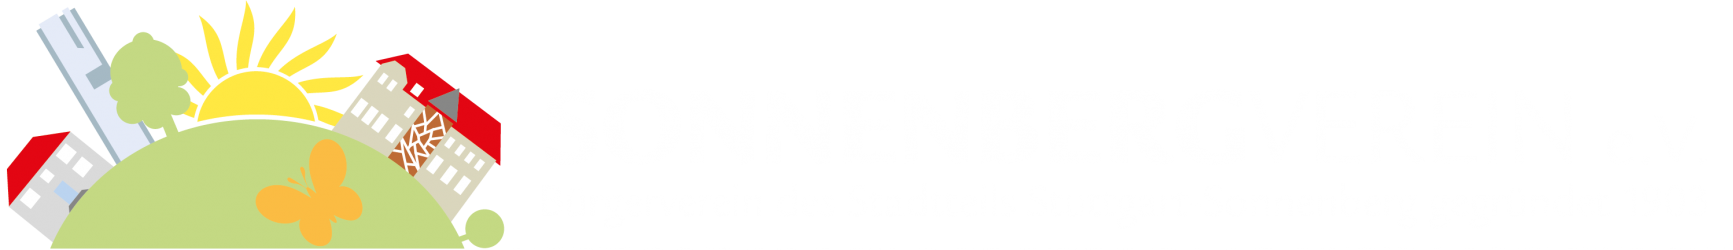 Sonnenberg-Verein e.V.